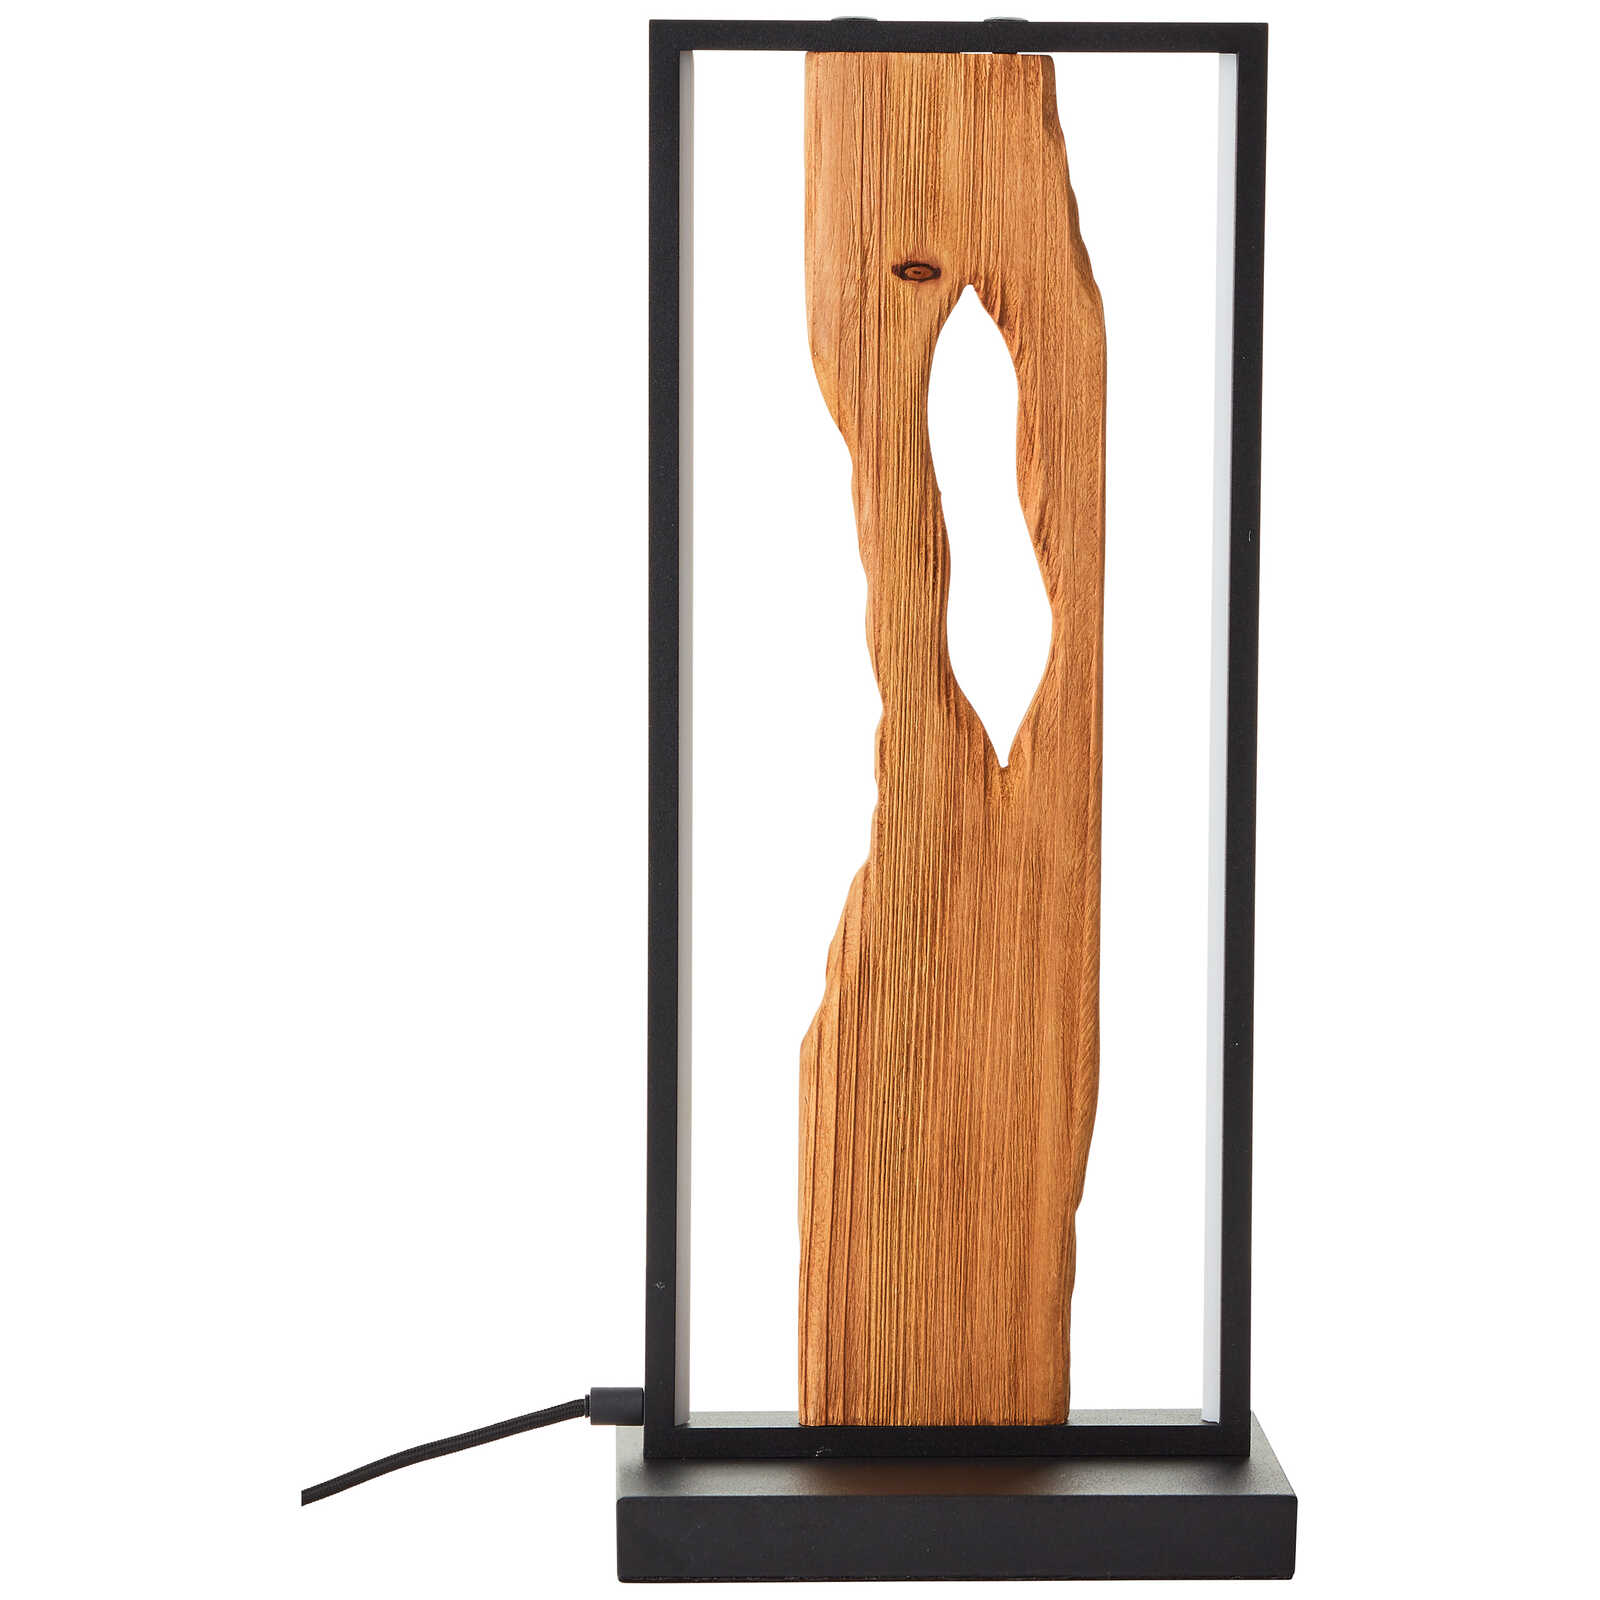             Lampada da tavolo in legno - Elea 3 - Marrone
        